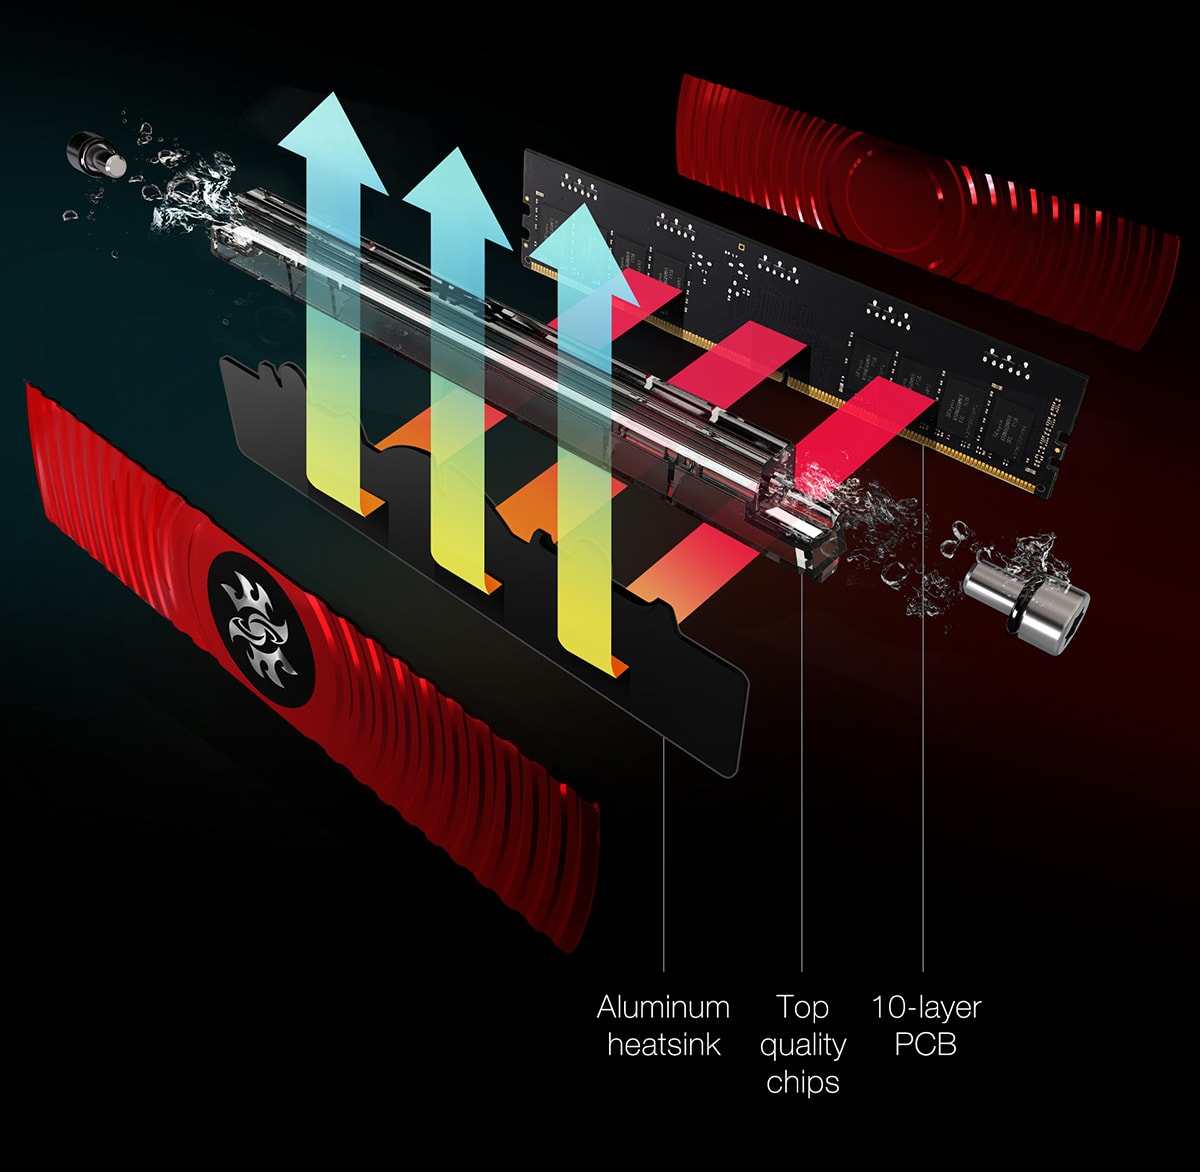 Dünyanın ilk sıvı soğutmalı ve RGB aydınlatmalı DDR4 belleği duyuruldu